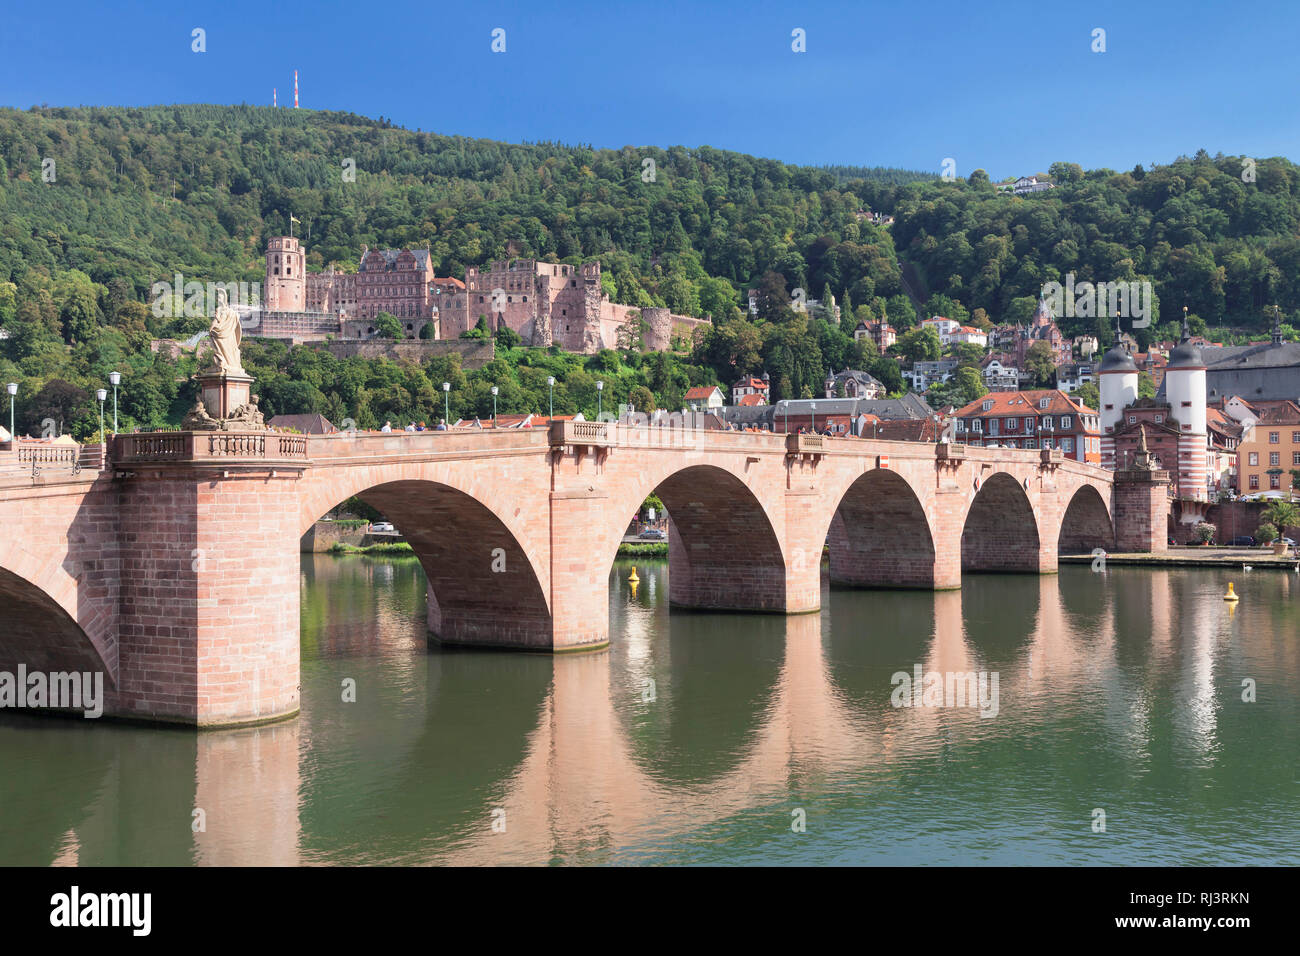 Blick über den Neckar auf die Altstadt mit Karl-Theodor-Brücke, Brückentor und Schloss, Heidelberg, Baden-Württemberg, Deutschland Stock Photo